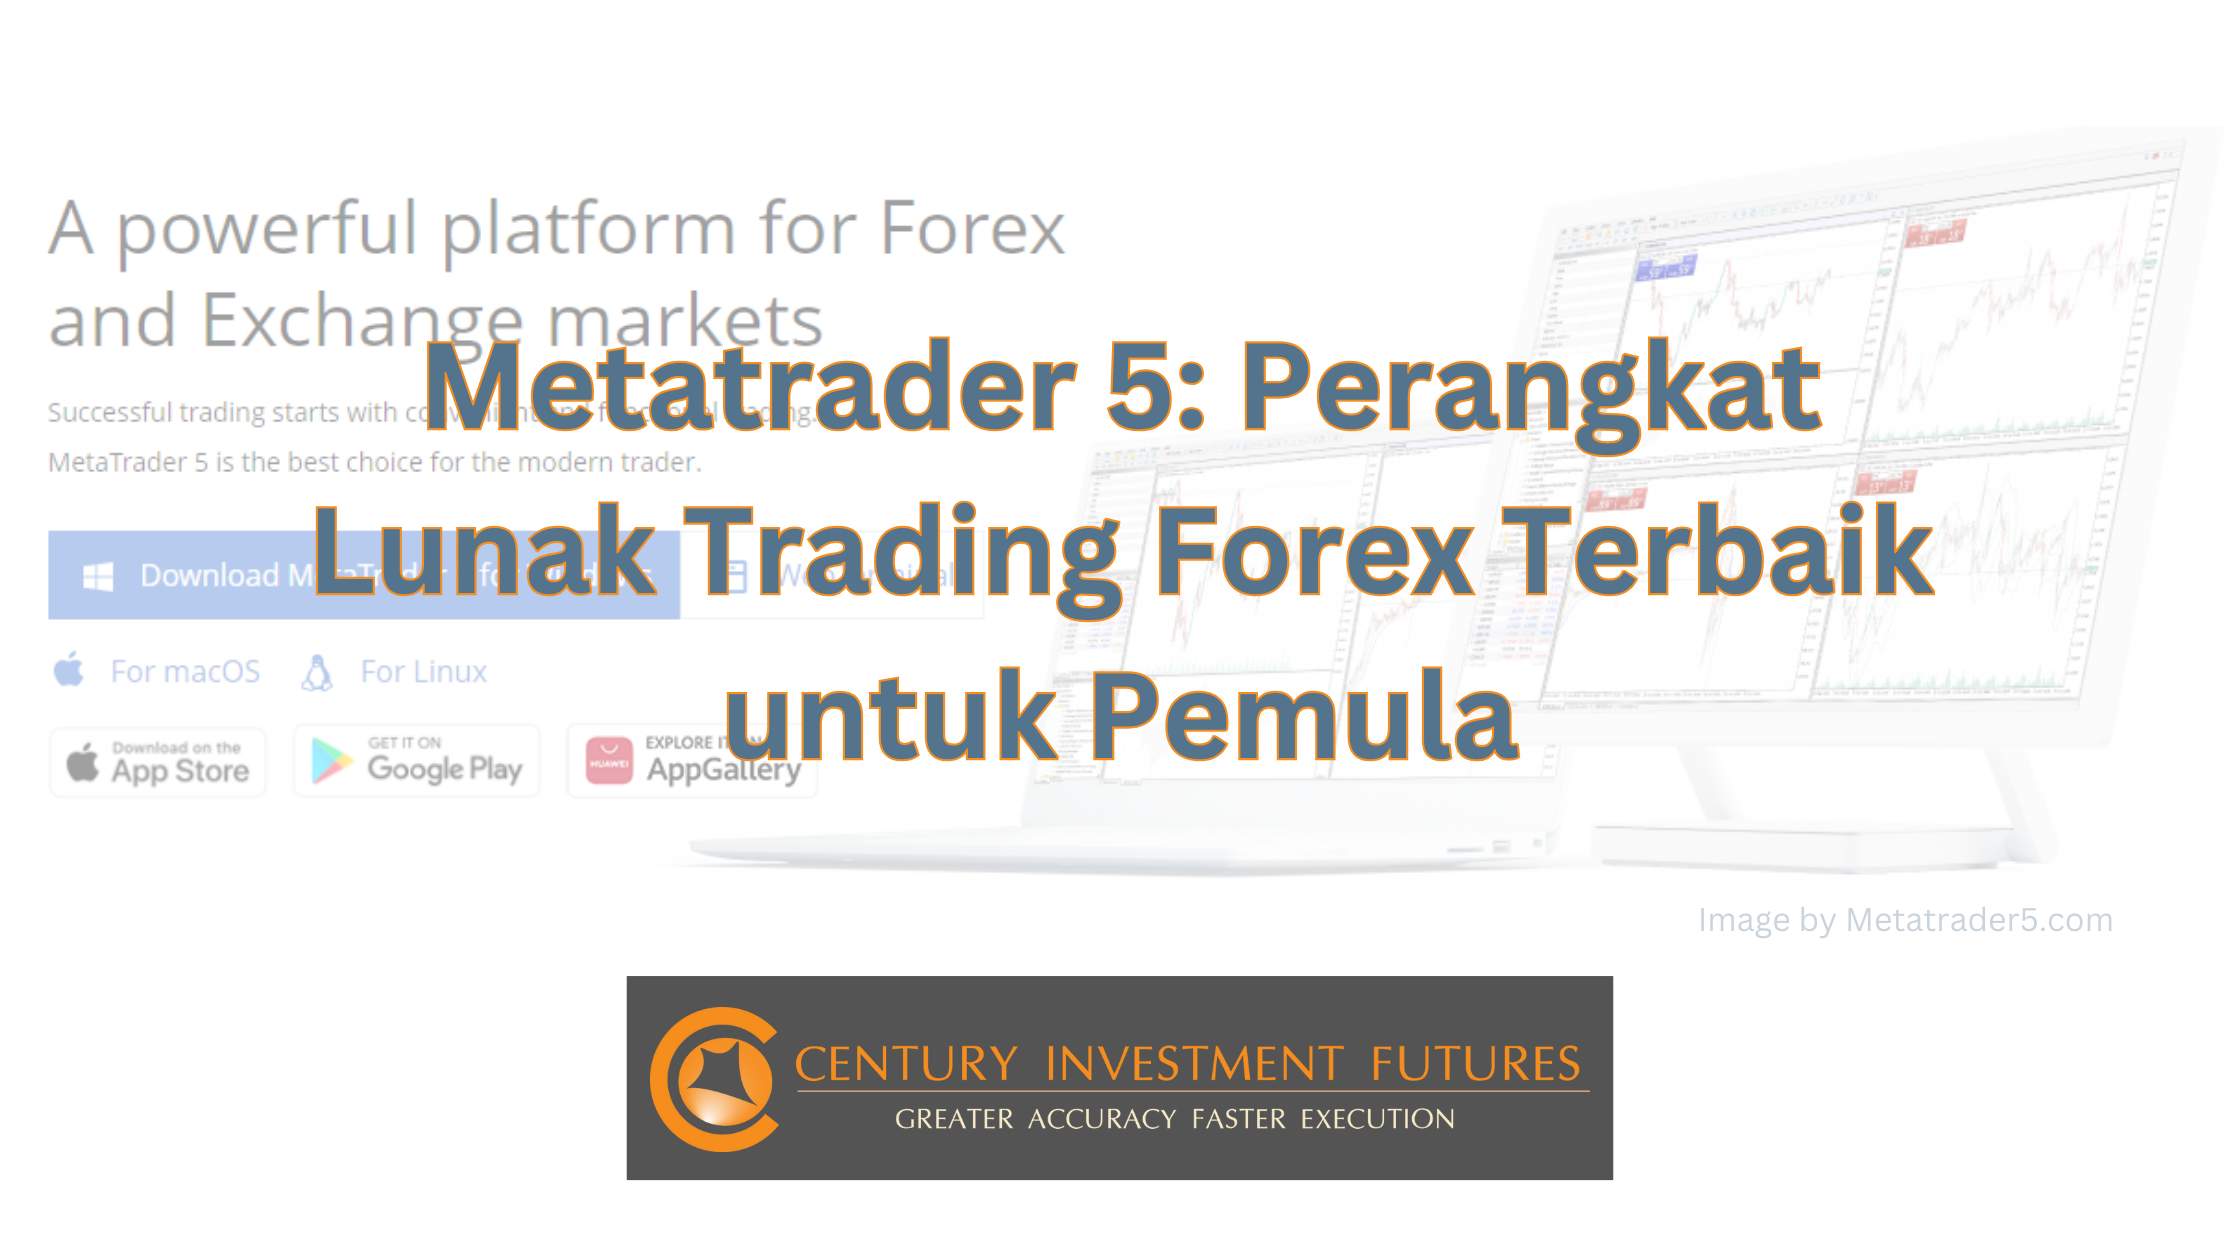 Metatrader 5: Perangkat Lunak Trading Forex